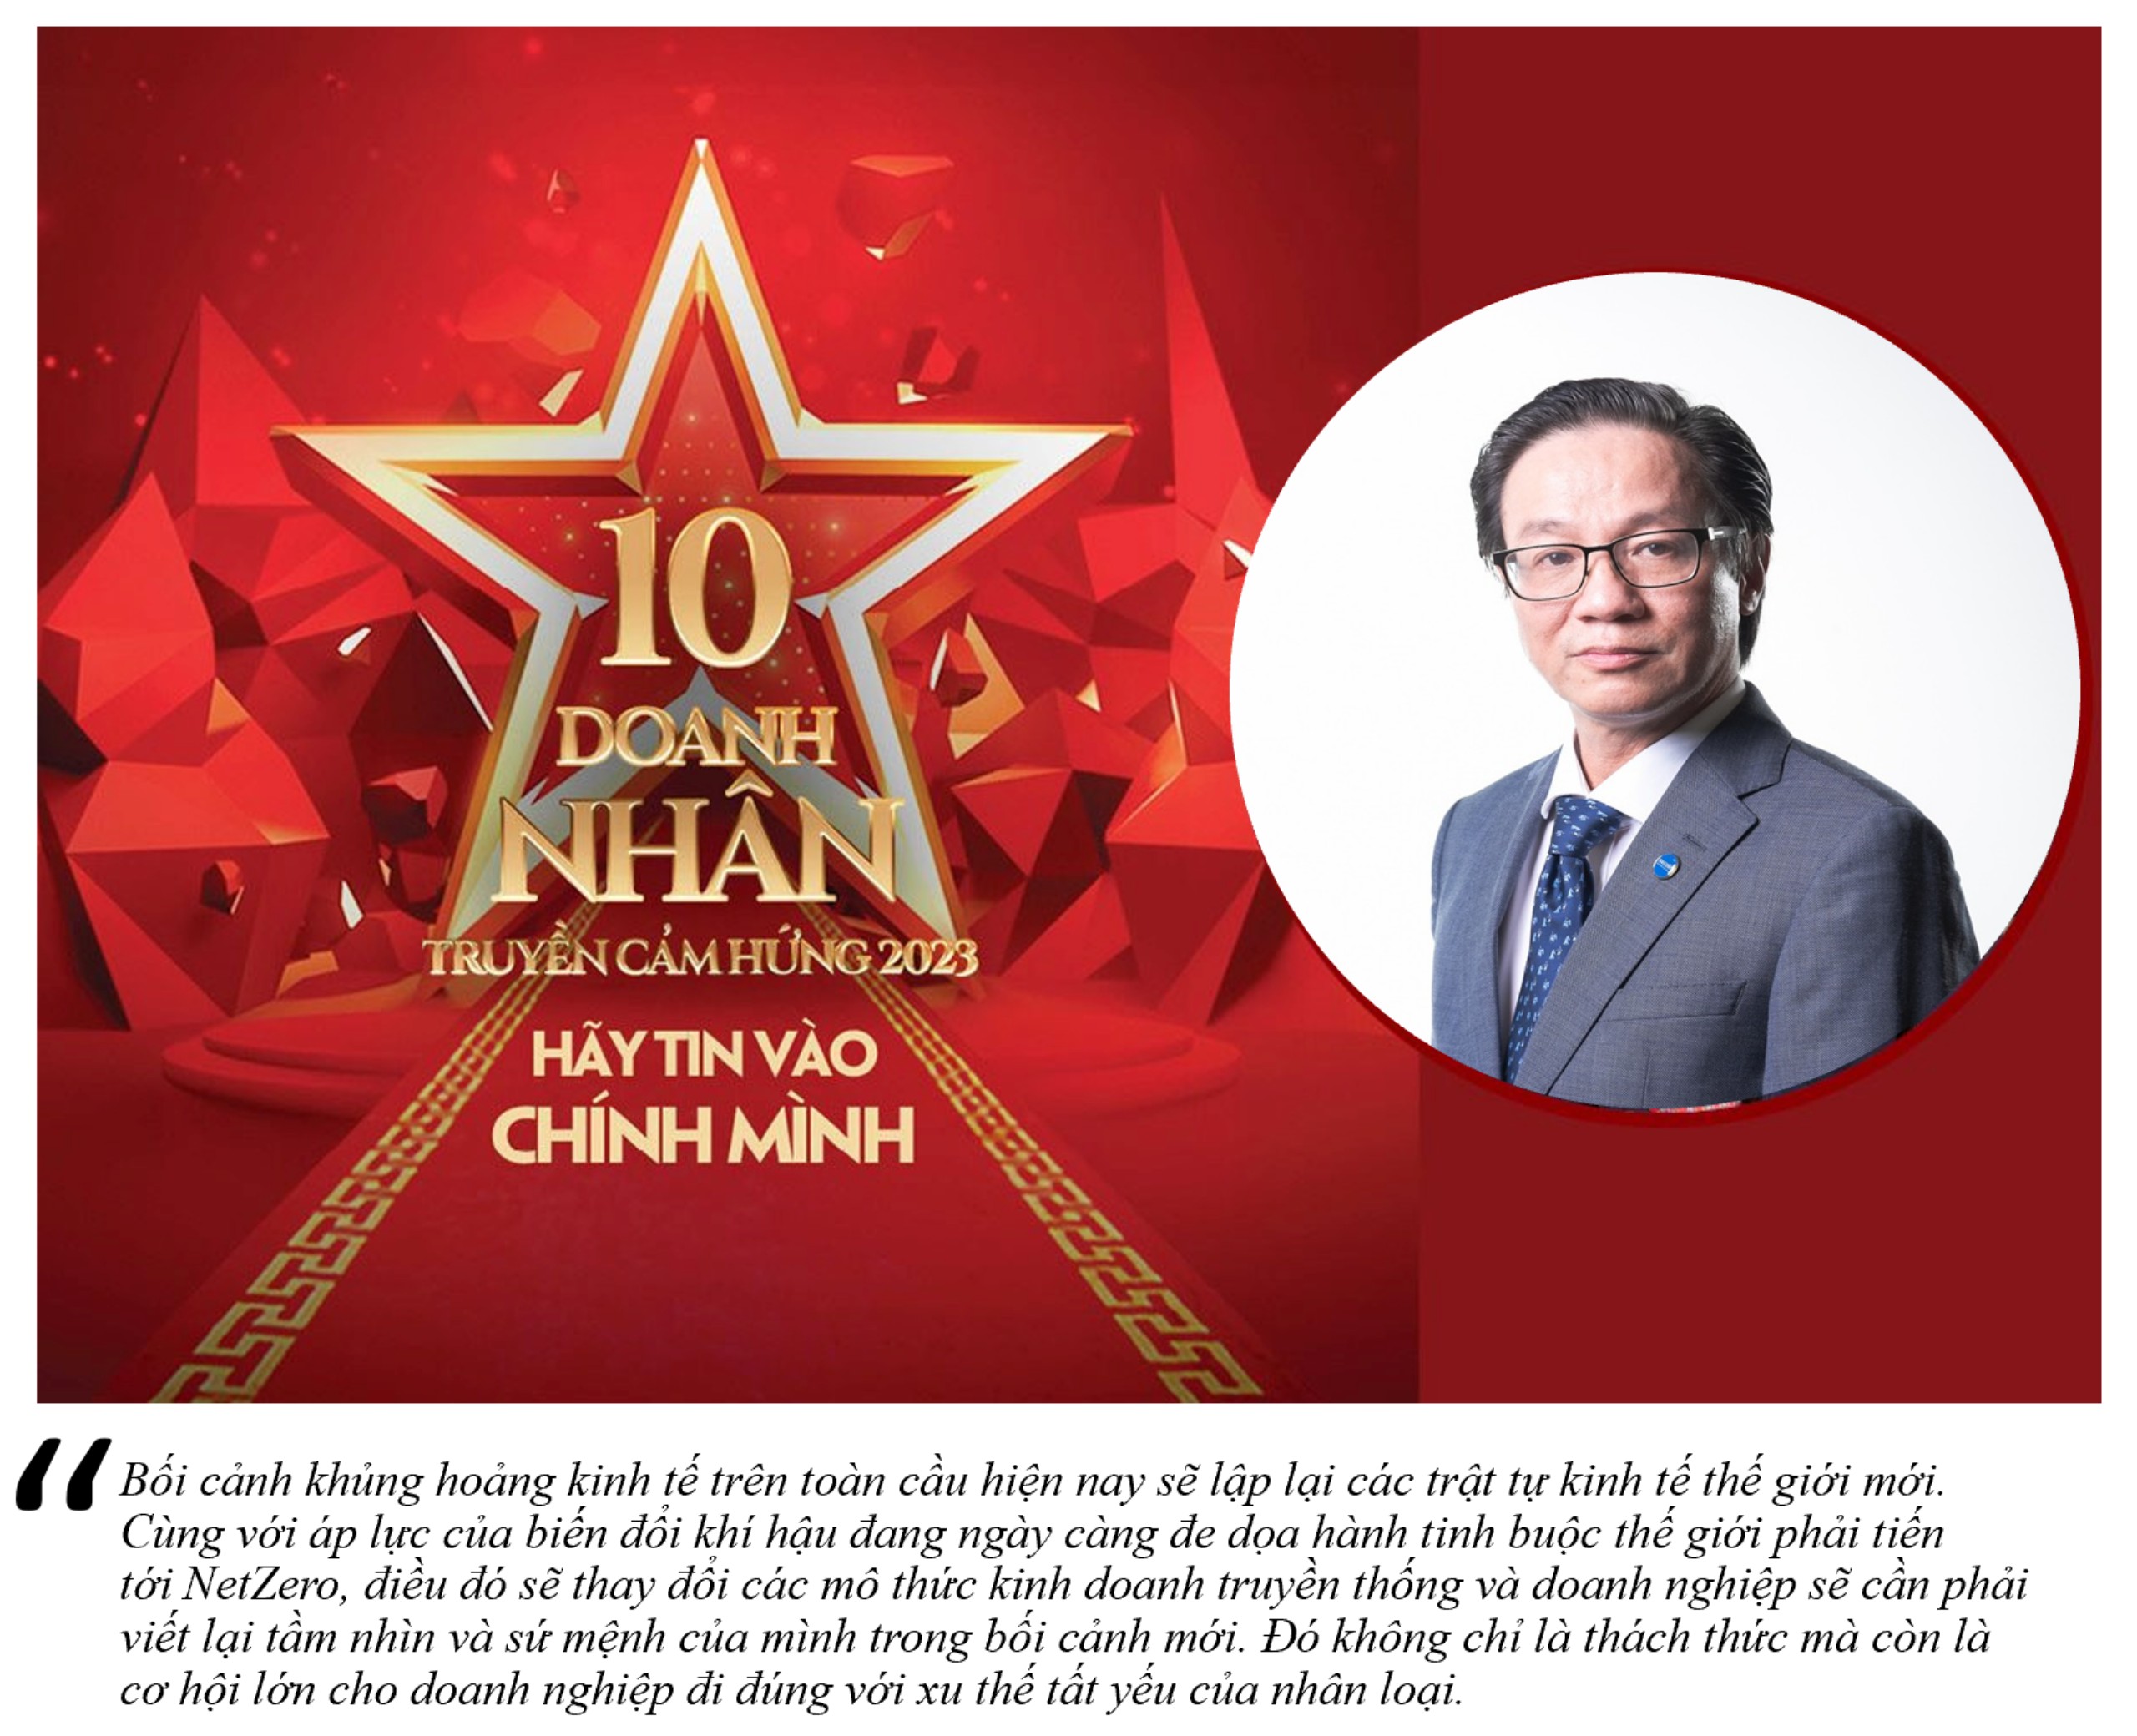 Chúc mừng ông Đinh Hồng Kỳ - Chủ tịch Secoin là 1 trong 10 Doanh nhân truyền cảm hứng năm 2023